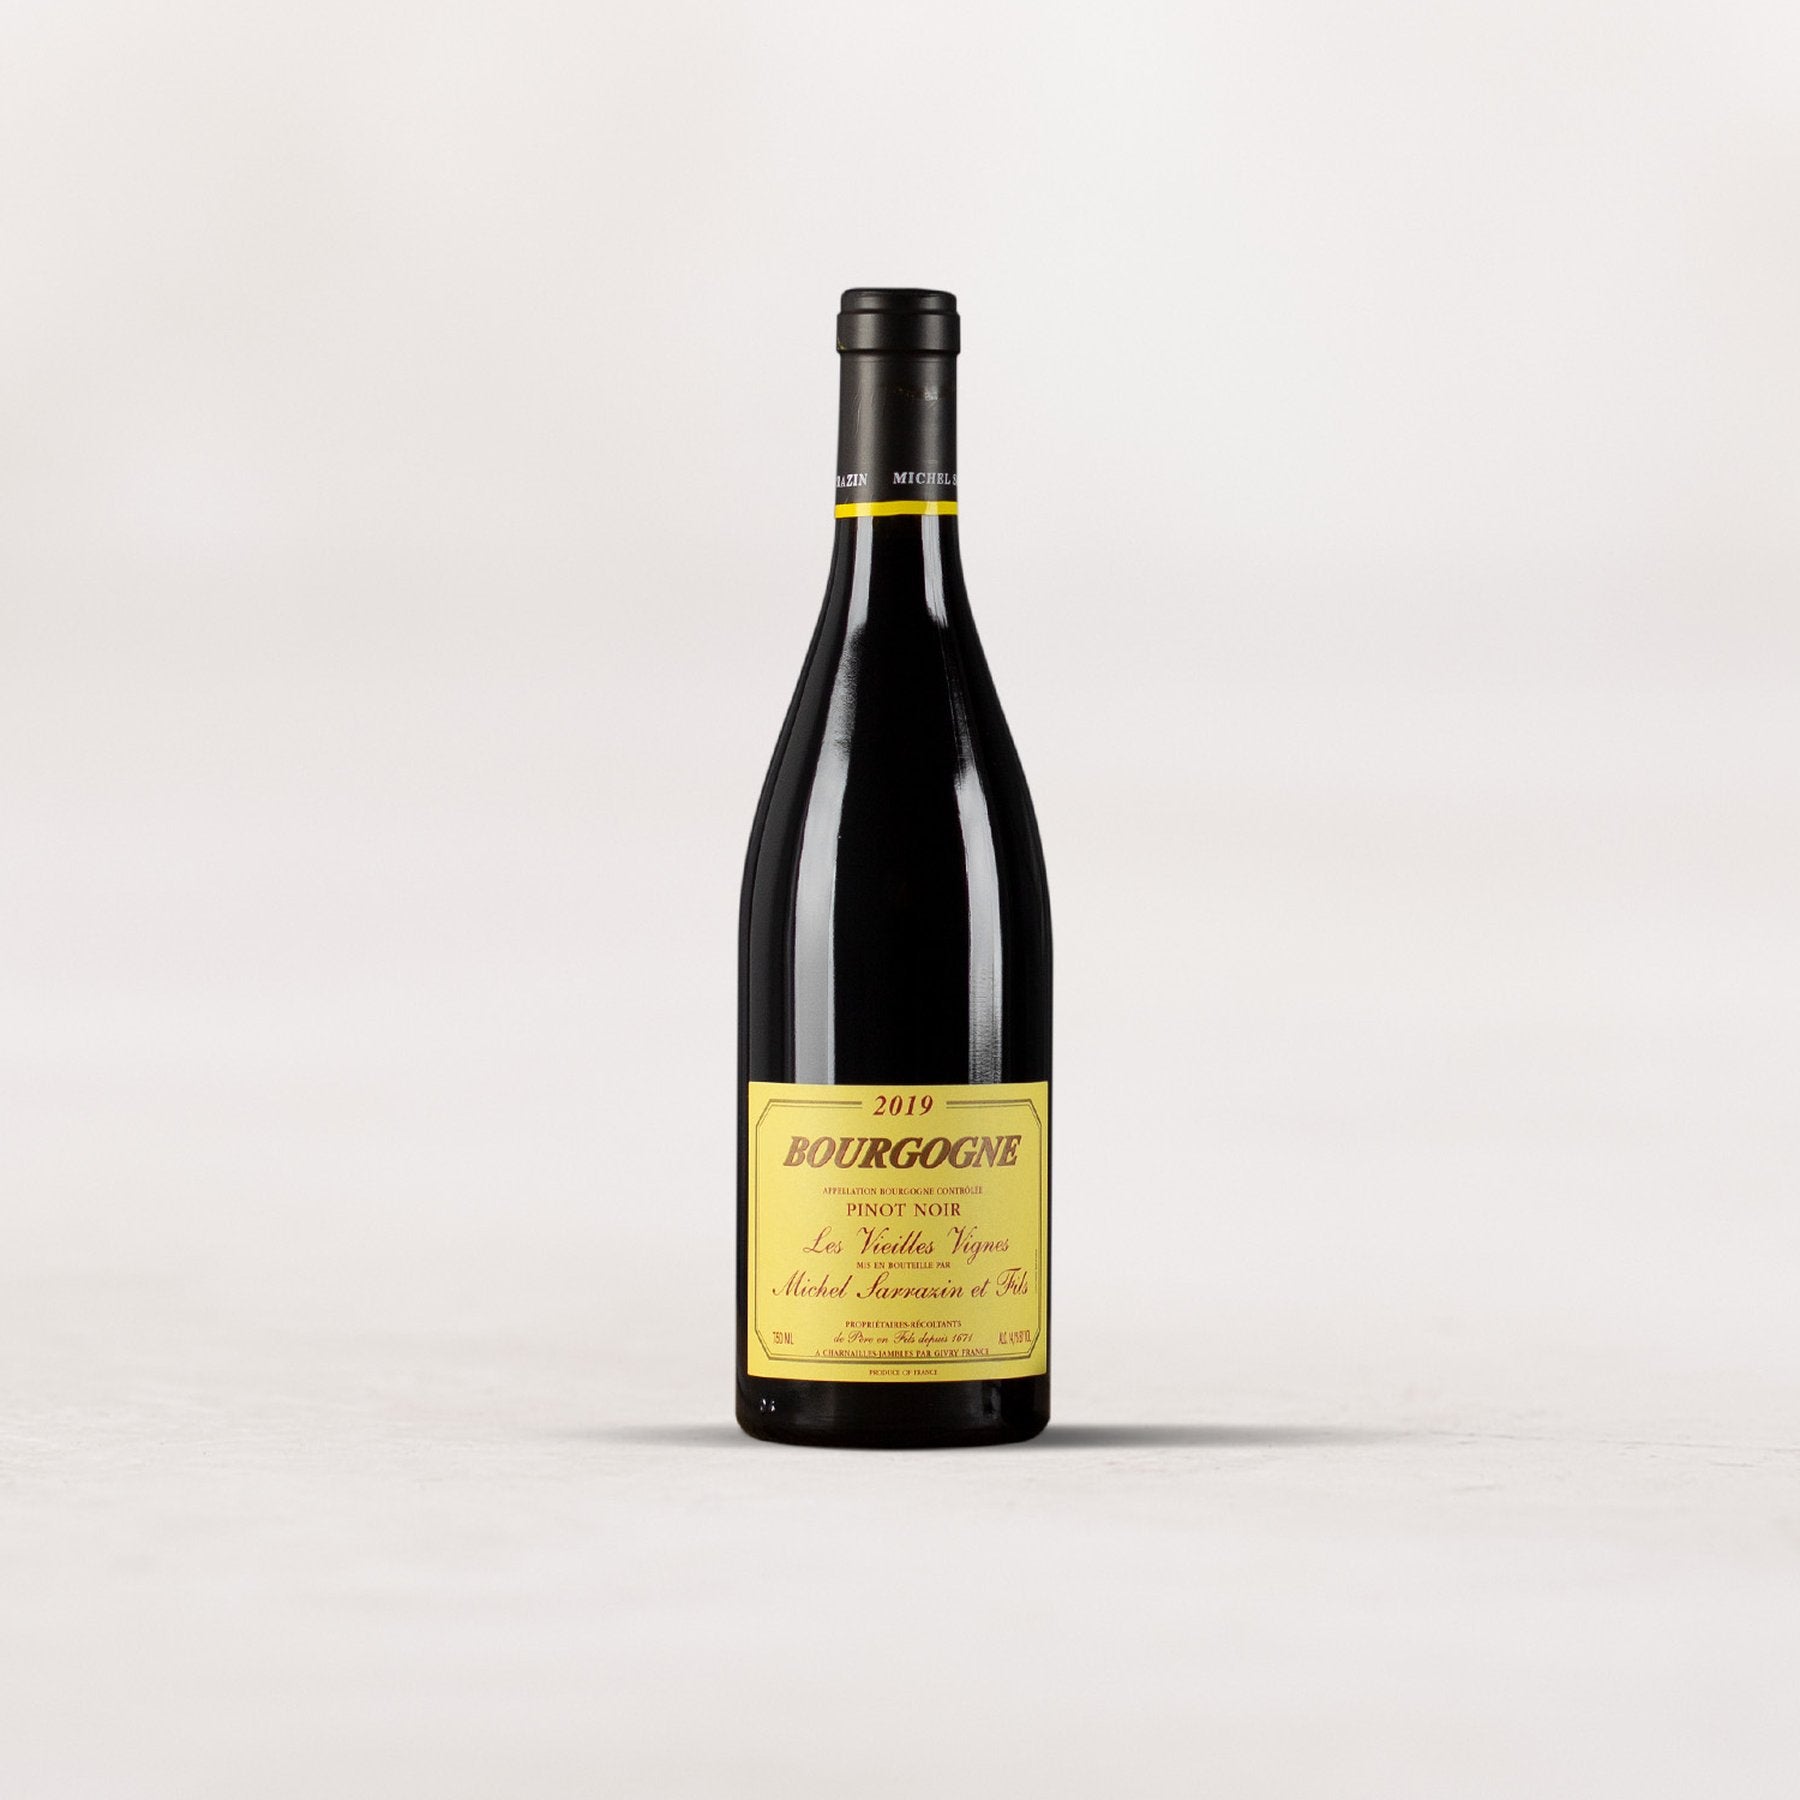 Michel Sarrazin & Fils, Bourgogne Pinot Noir “Les Vieilles Vignes”